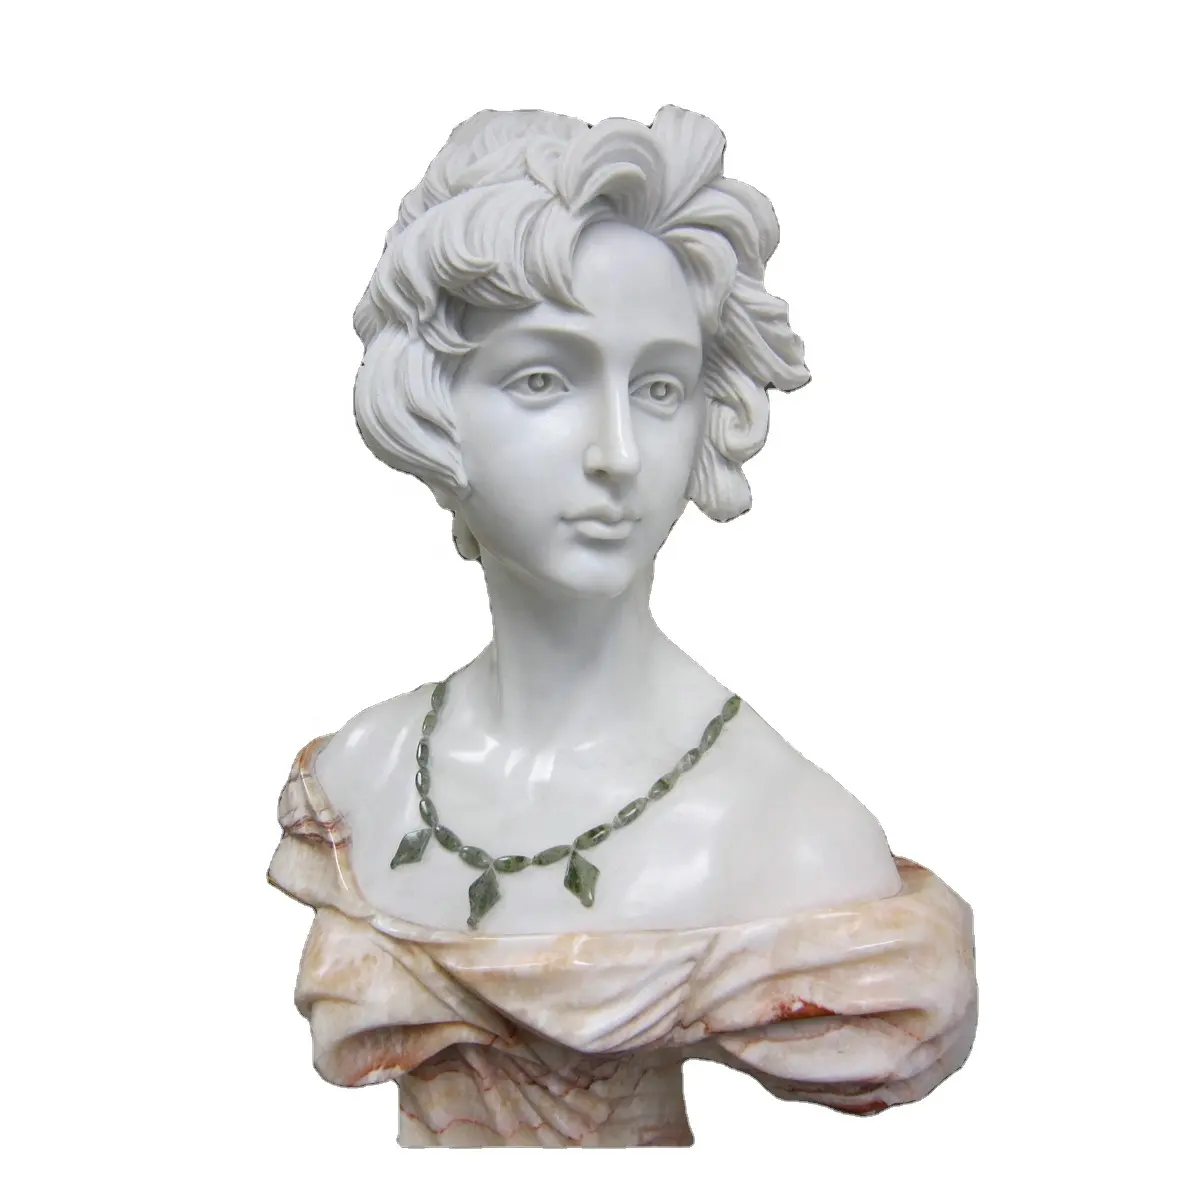 Personalizado hermoso jardín decorativo busto de mármol dama blanca tamaño busto esculturas de mármol, las mujeres